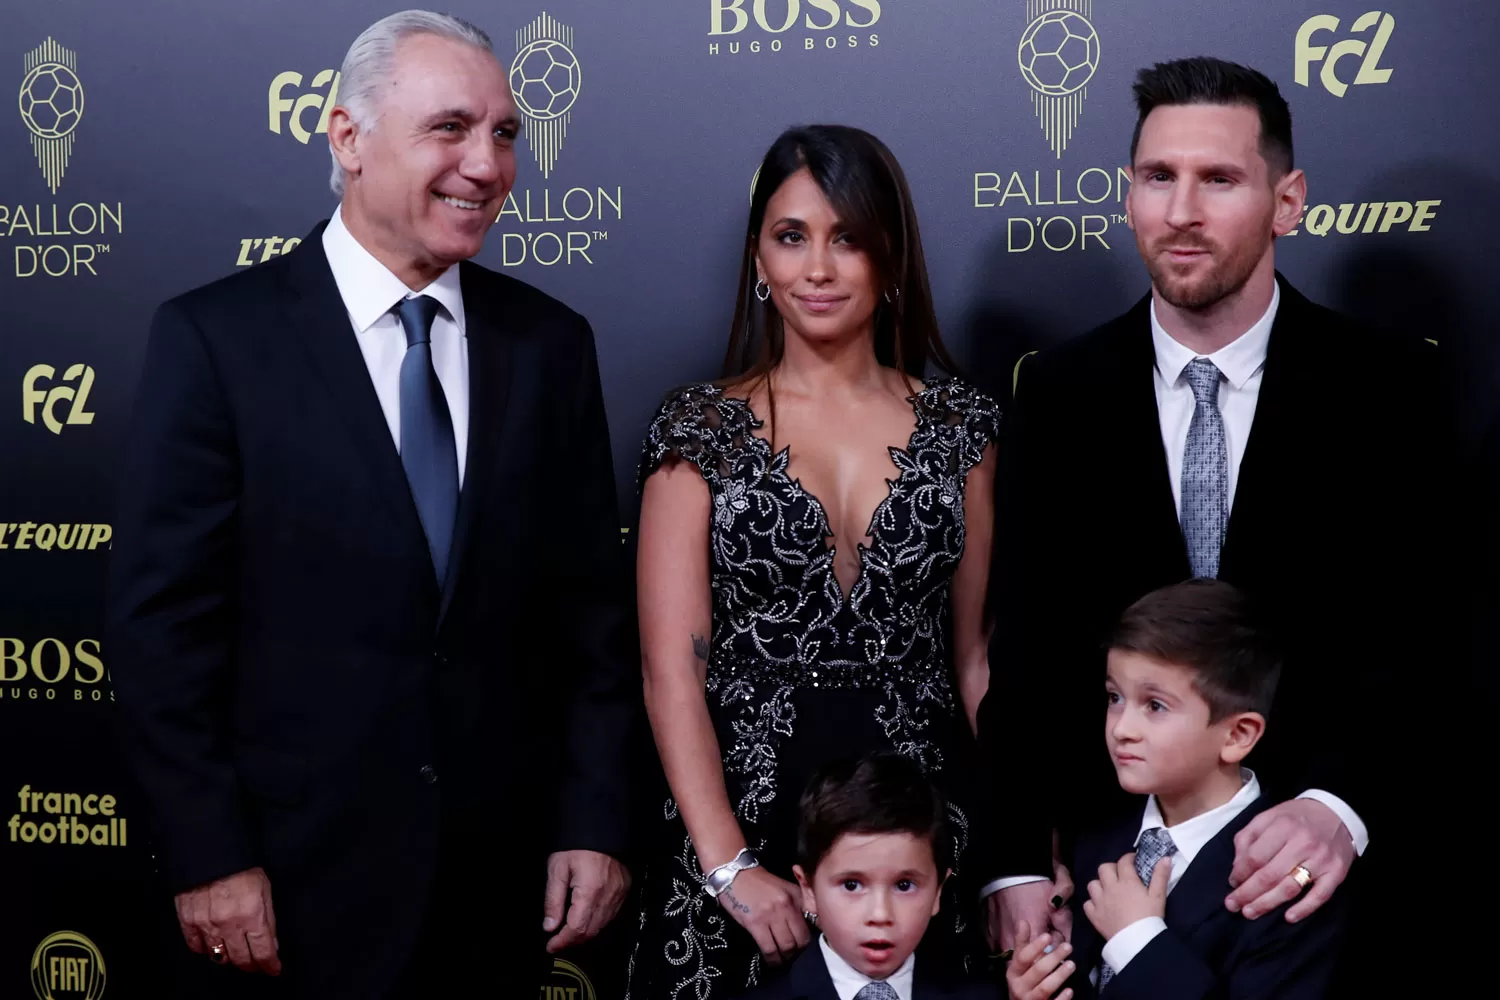 EN FAMILIA. Messi, junto a su esposa y dos hijos posó junto al búlgaro Hristo Stoichkov.